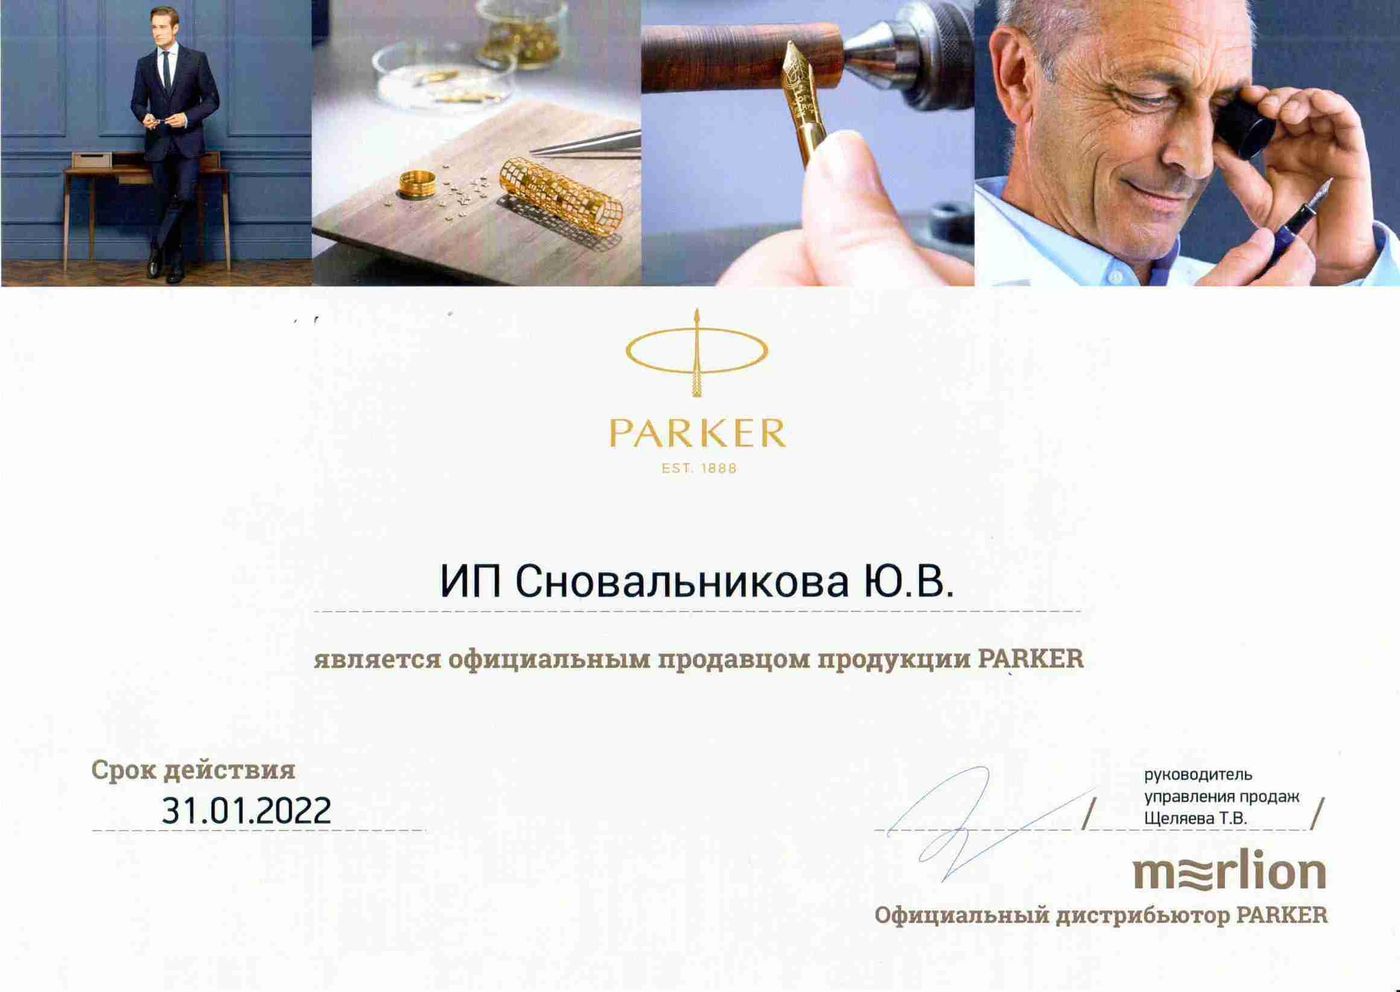 Сертификат официального продавца продукции Parker